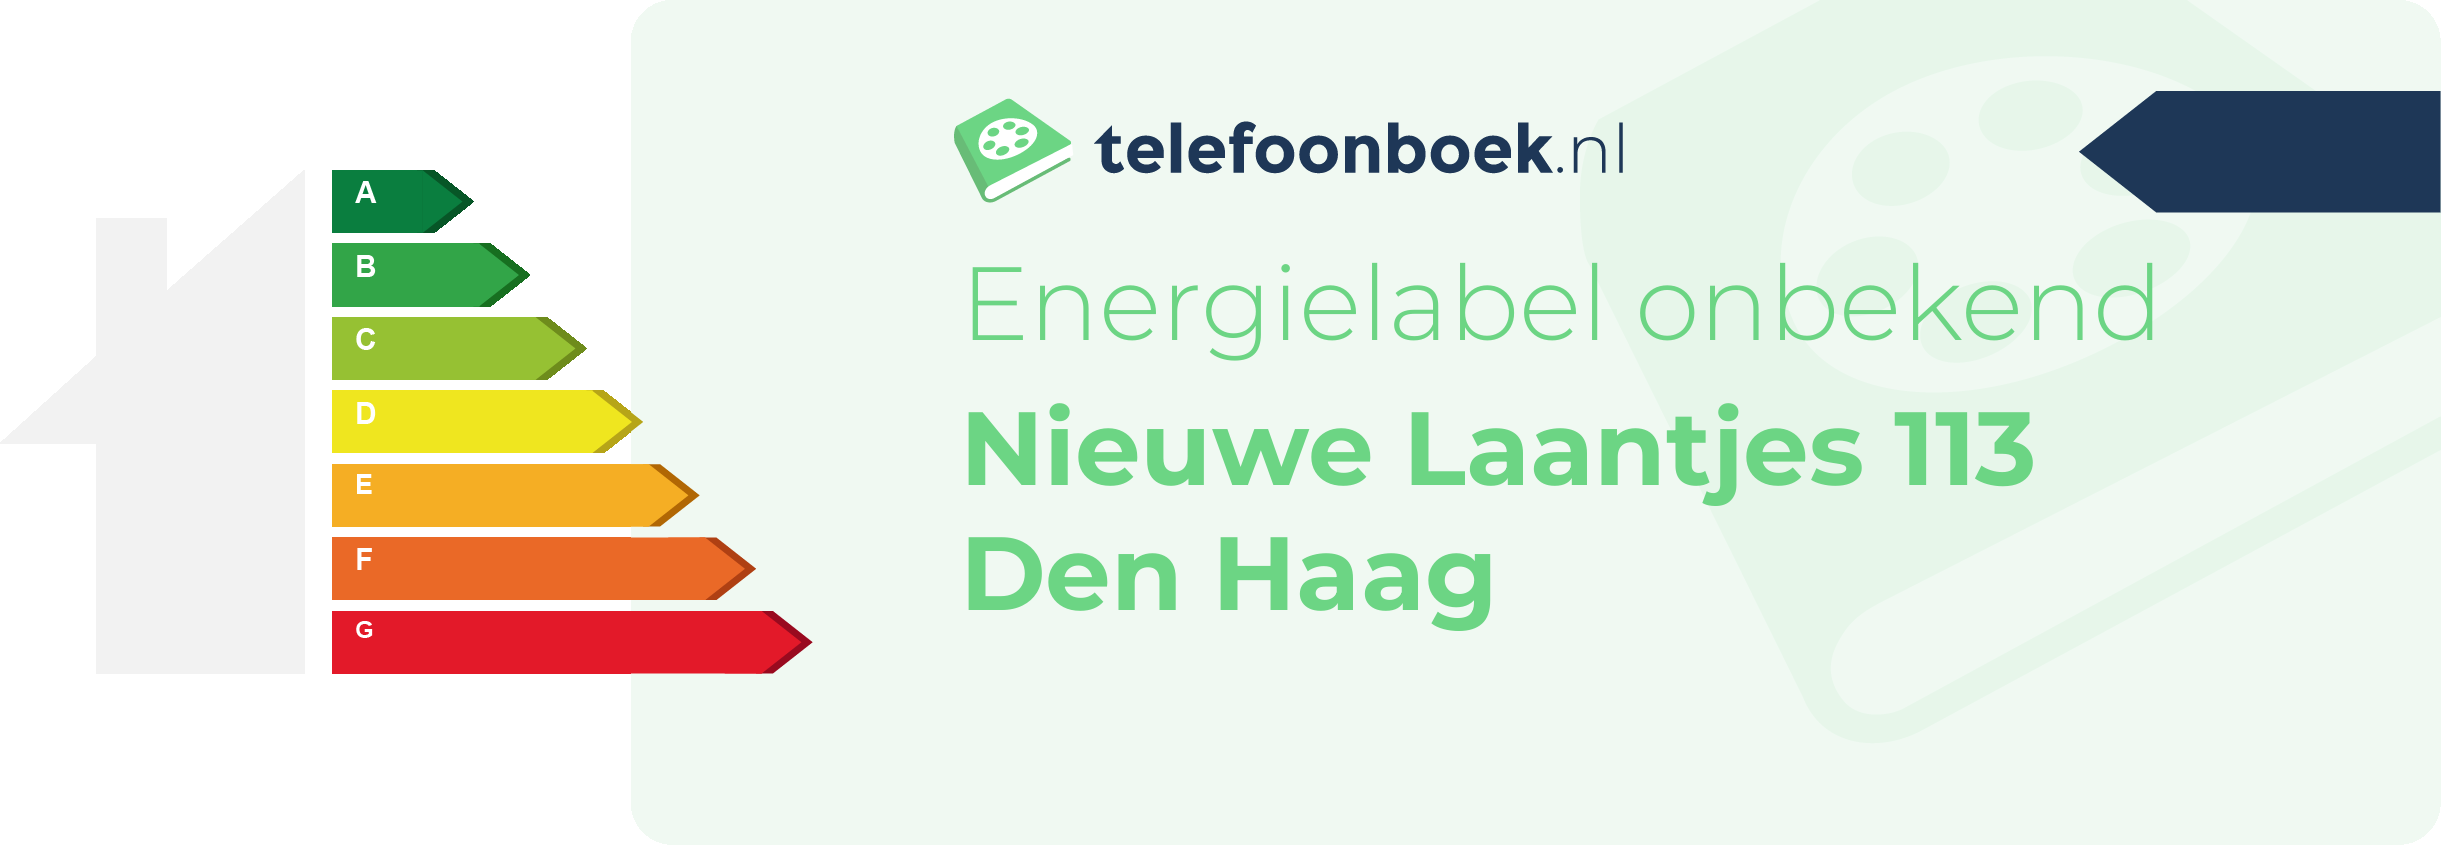 Energielabel Nieuwe Laantjes 113 Den Haag